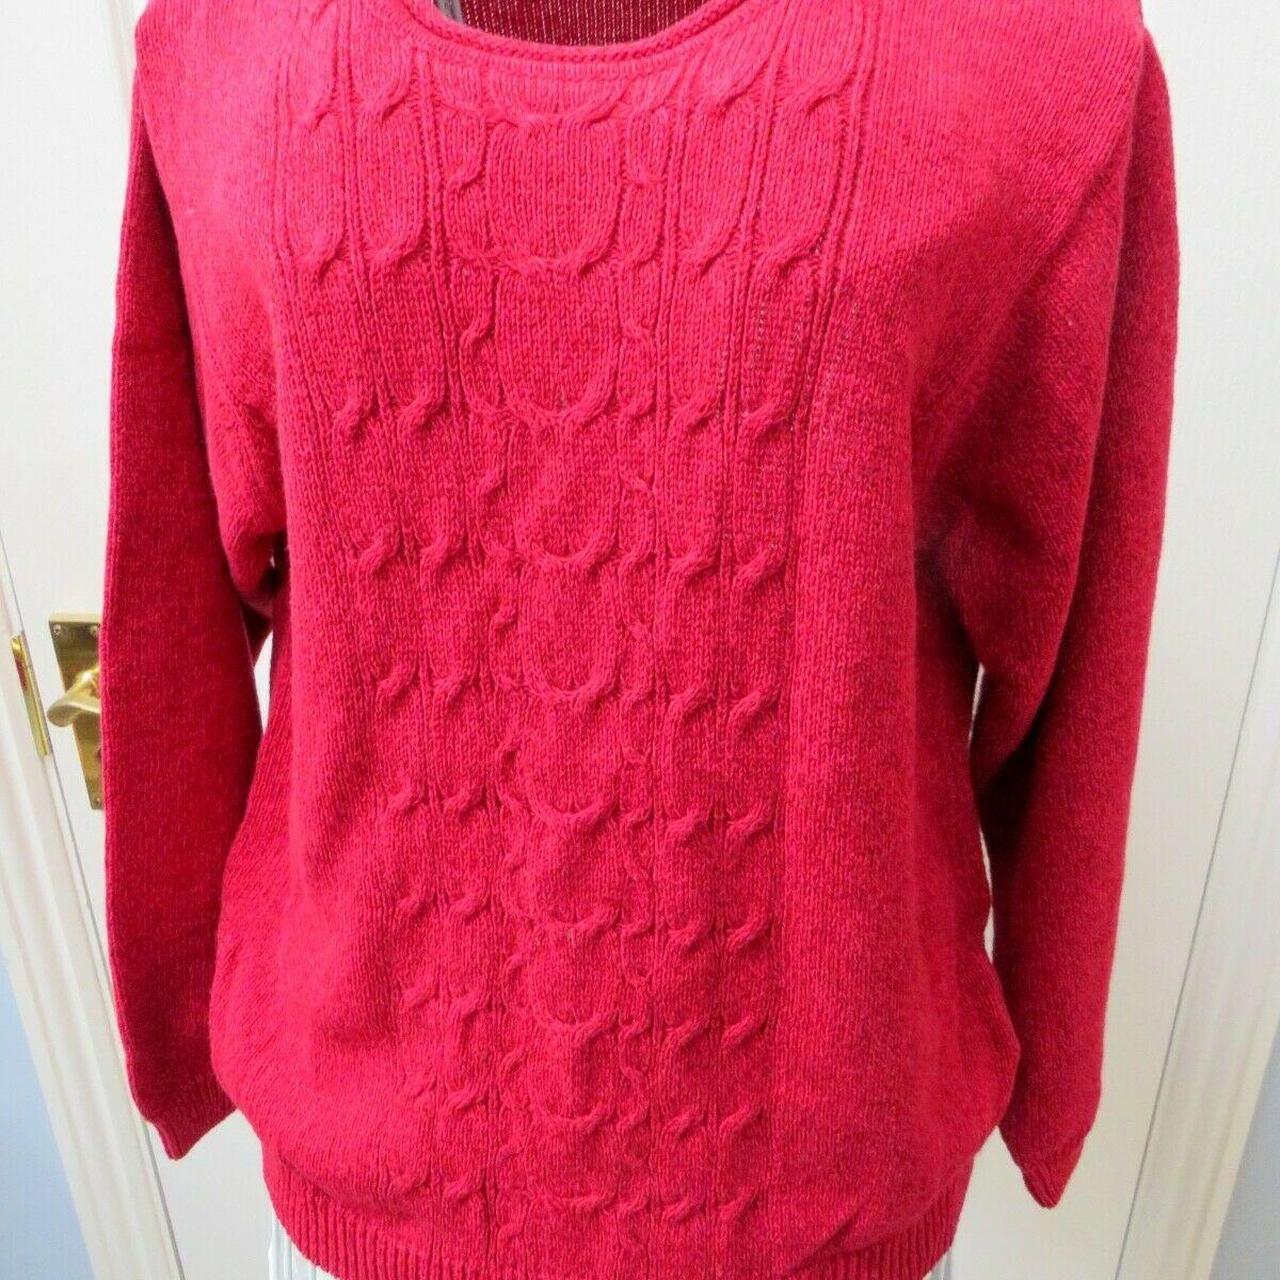 Vintage Y2k / noughties sweater by JUMPER Size... - Depop